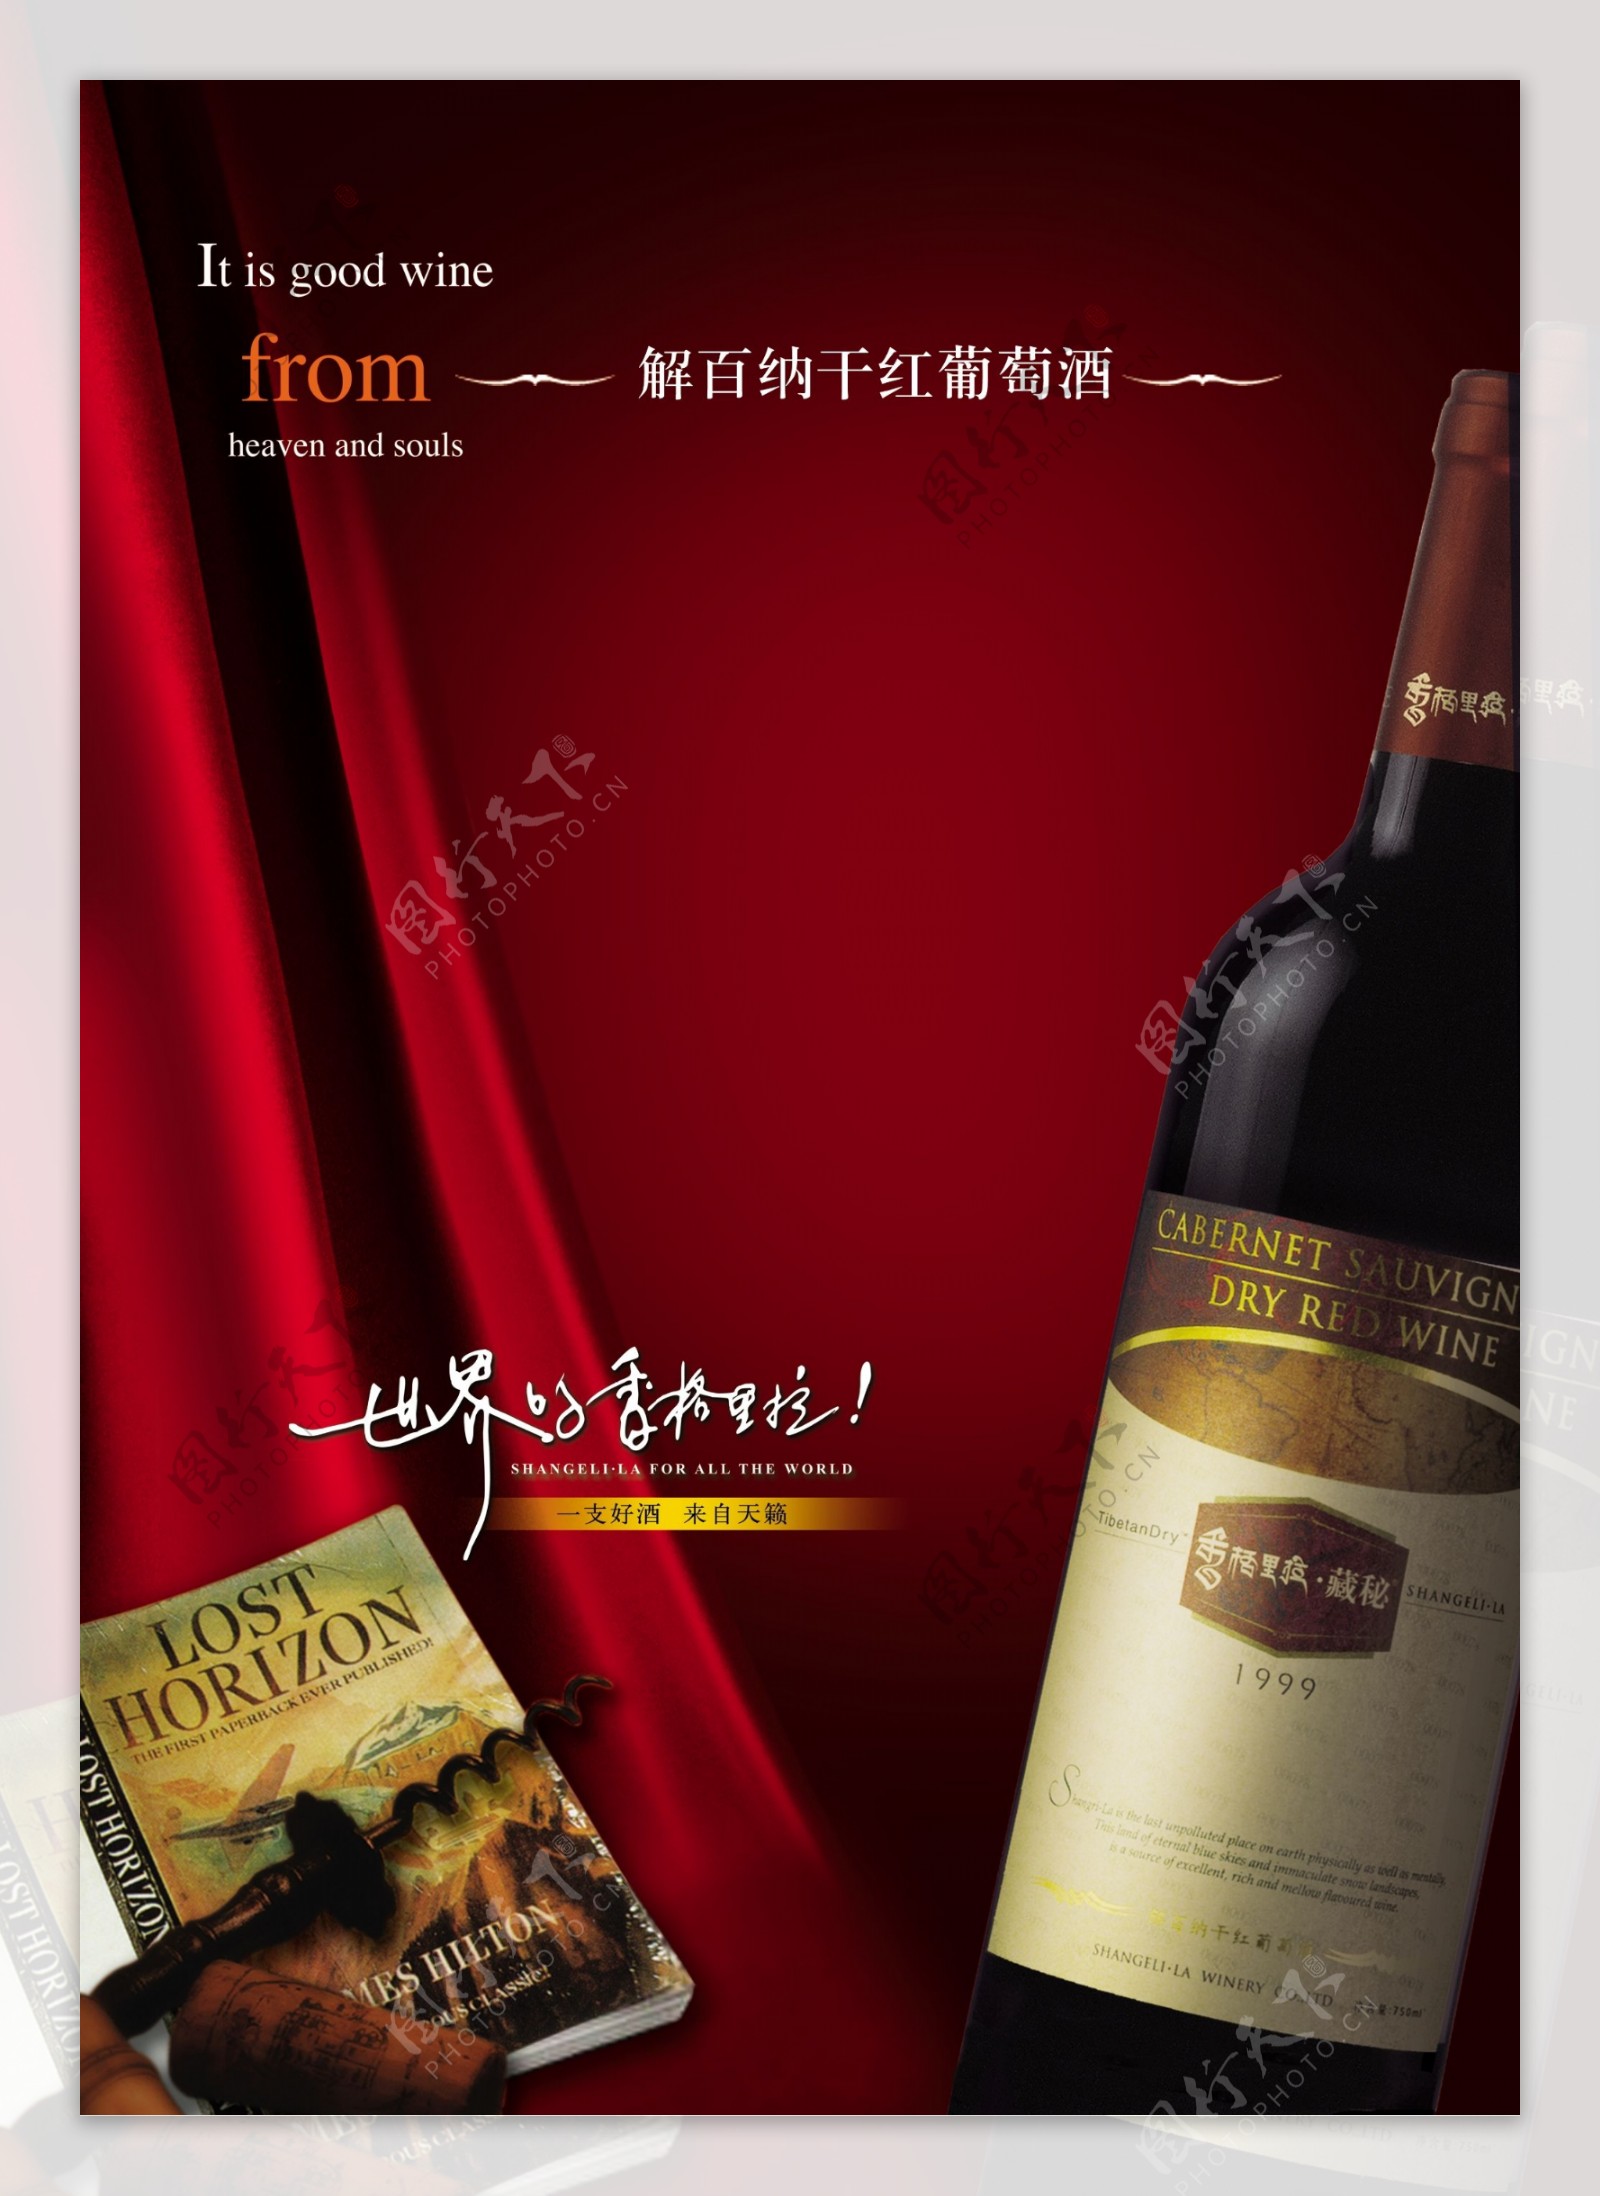 基百纳葡萄酒海报广告设计素材